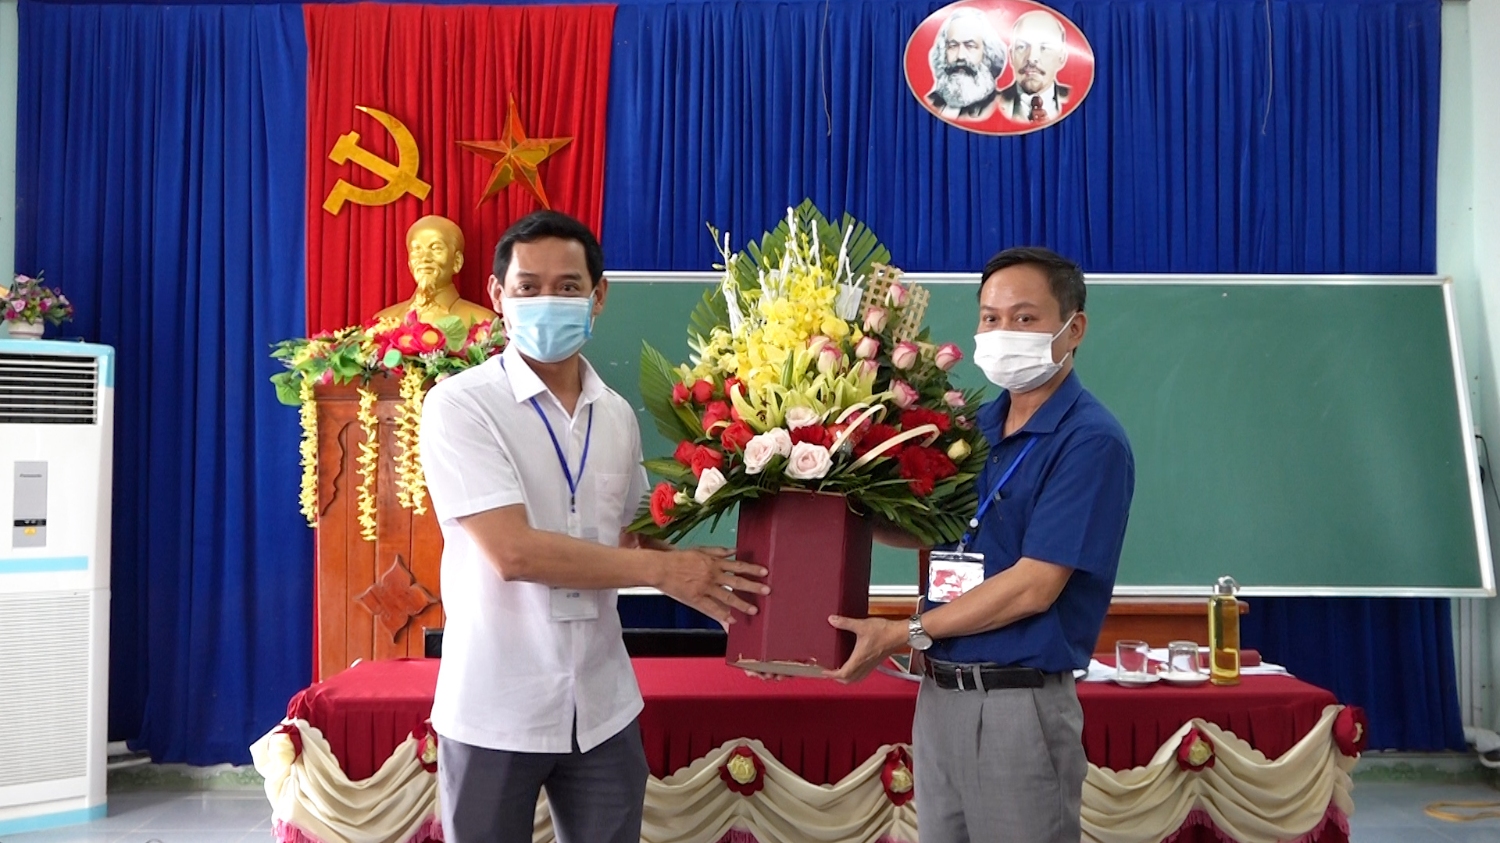 Đồng chí Nguyễn Văn Tình ThUV, Phó Chủ tịch UBND thị xã Ba Đồn đã đến thăm, động viên đội ngũ cán bộ, giáo viên và nhân viên tại đểm thi trường THPT Lê Lợi